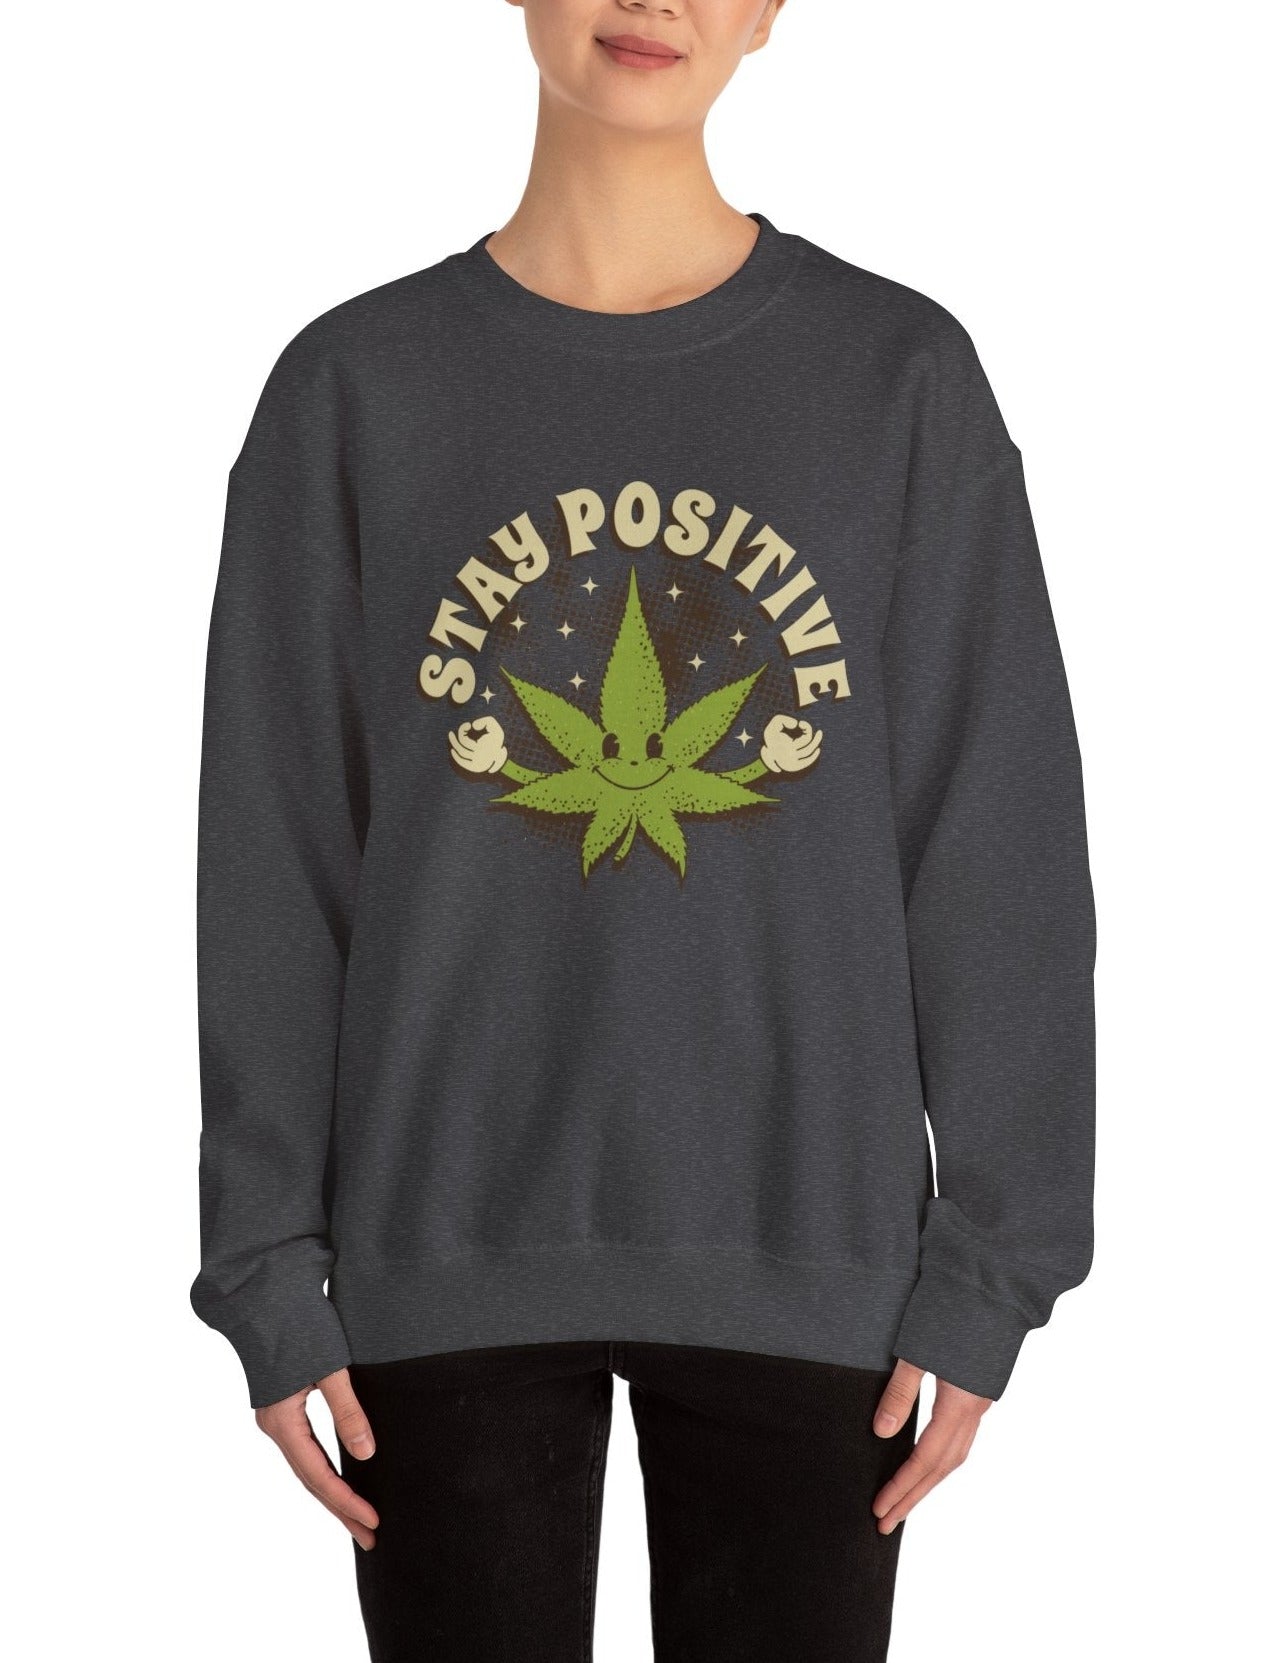 Stay Positive unisex sweatshirt